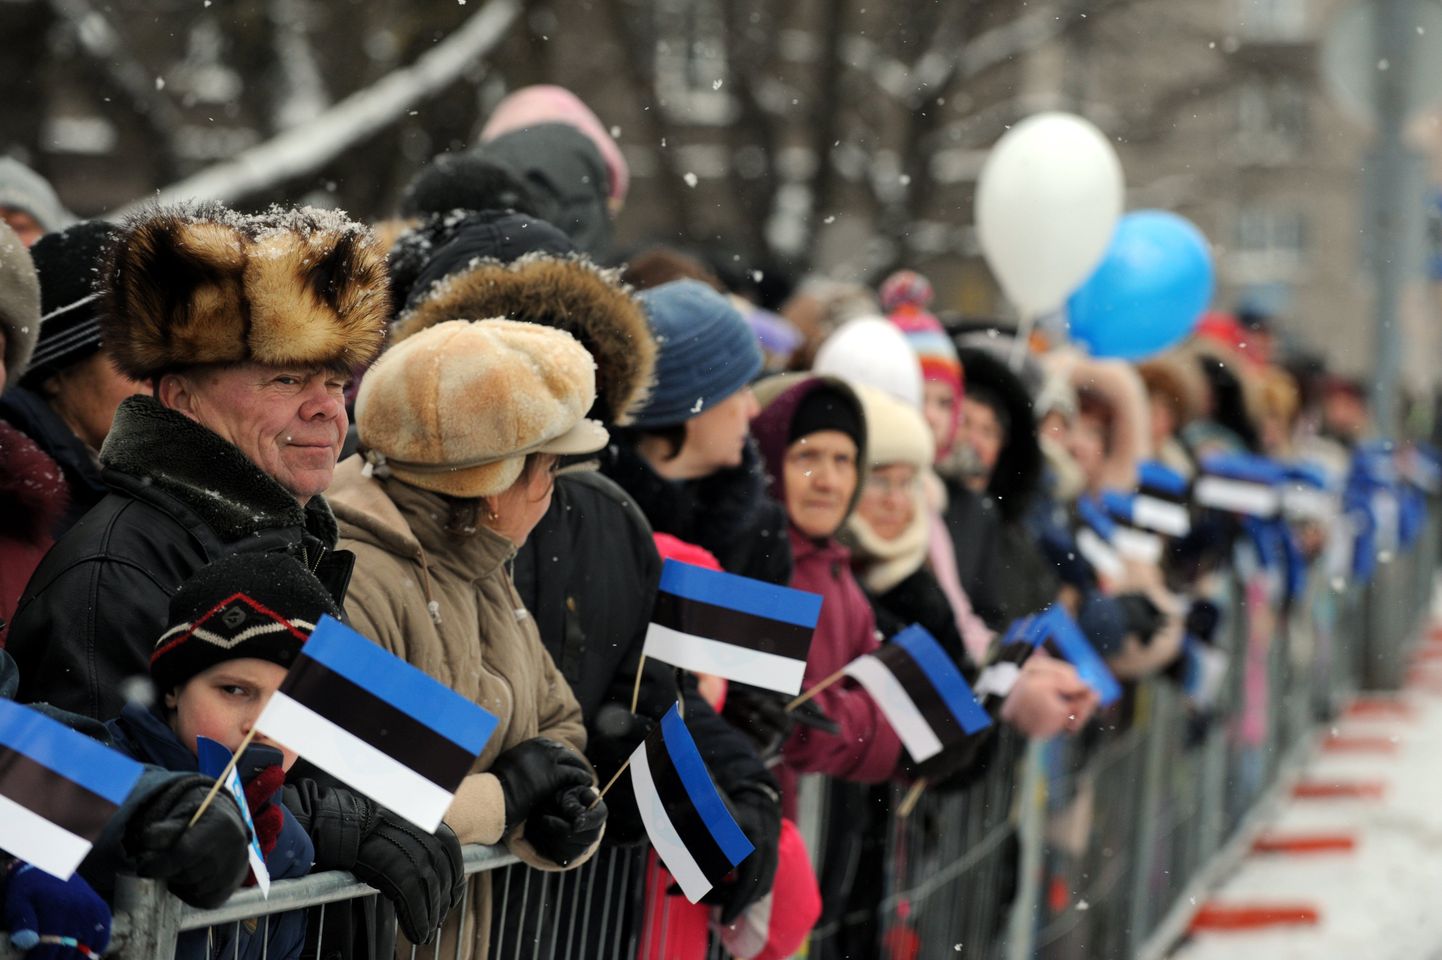 Narvalased 2009. aastal kodulinnas vabariigi aastapäeva paraadi jälgimas.